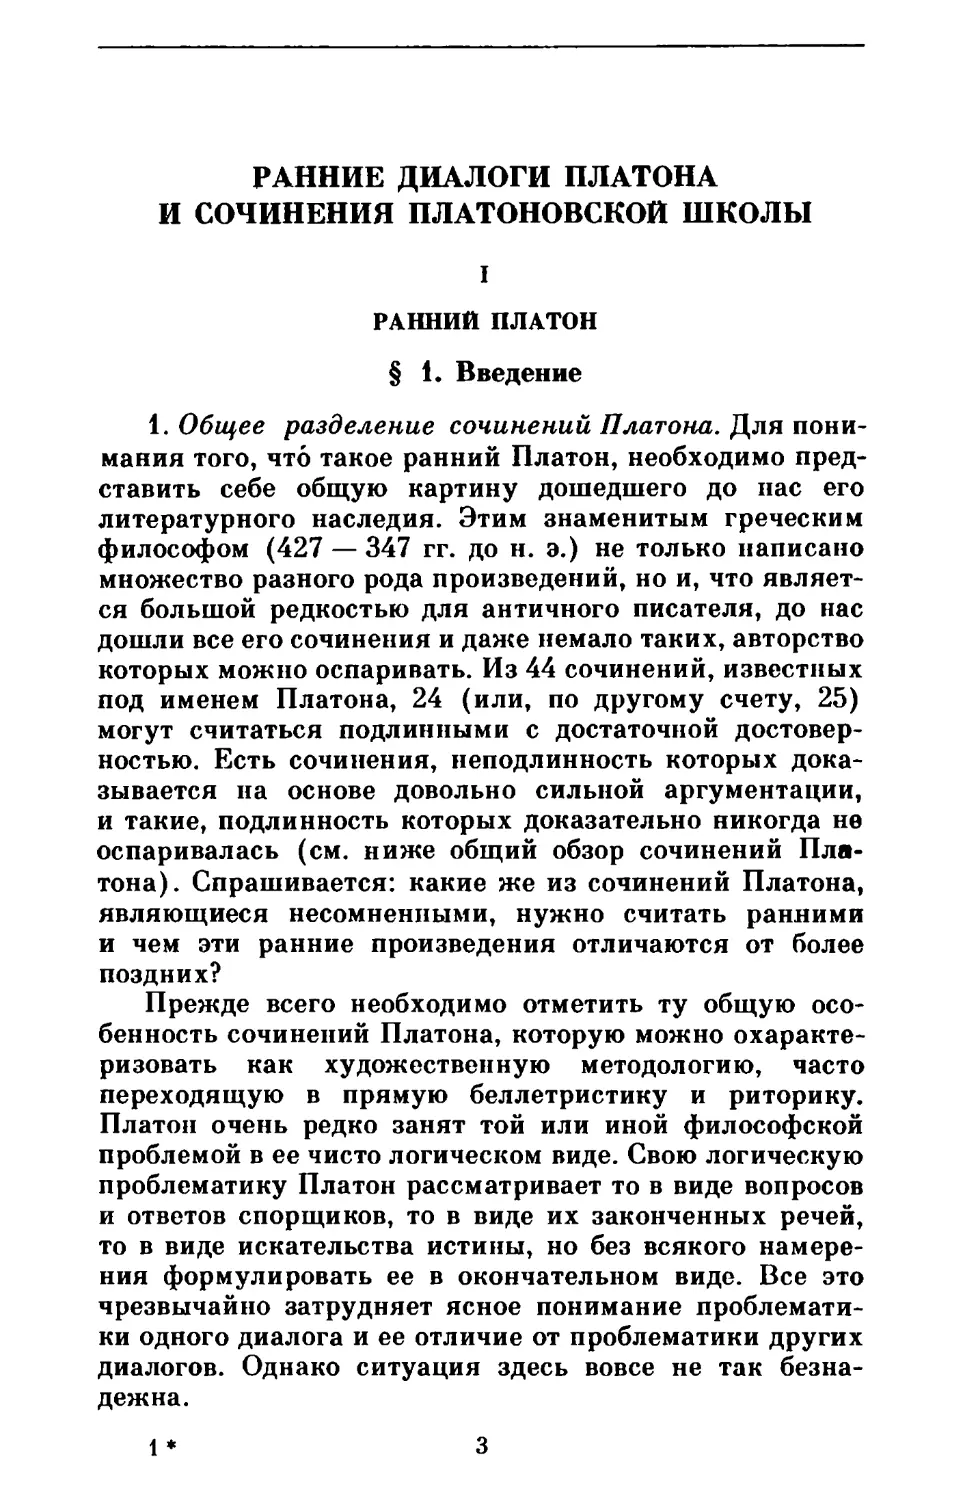 А. Ф. Лосев. Ранние диалоги Платона и сочинения платоновской школы